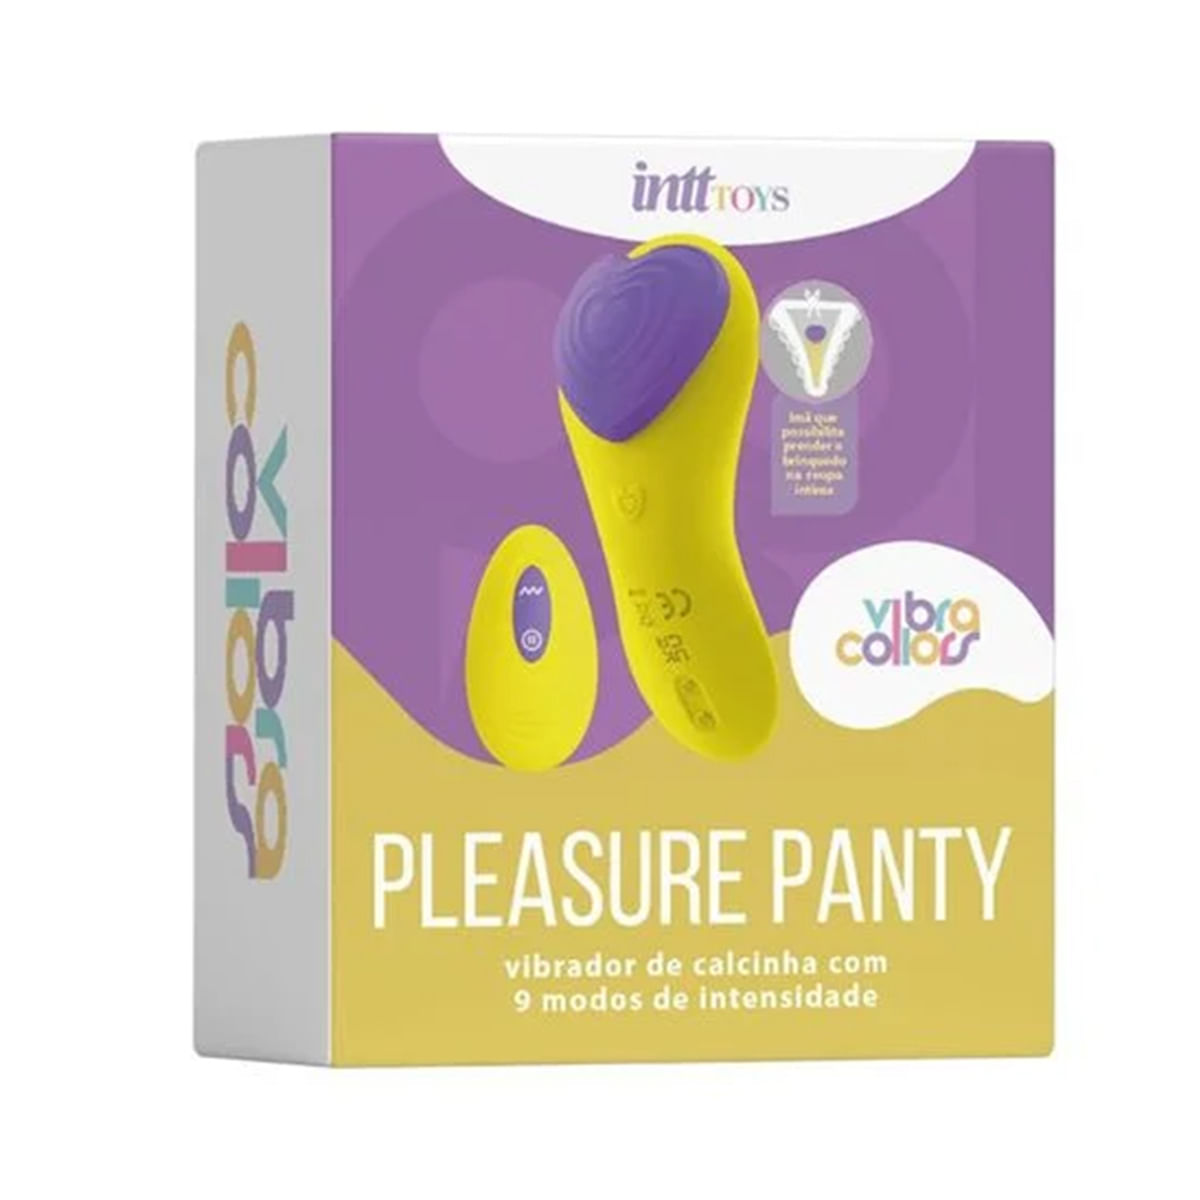 Pleasure Panty Vibrador de Calcinha Linha Vibra Collors 9 Modos de Vibração Intt